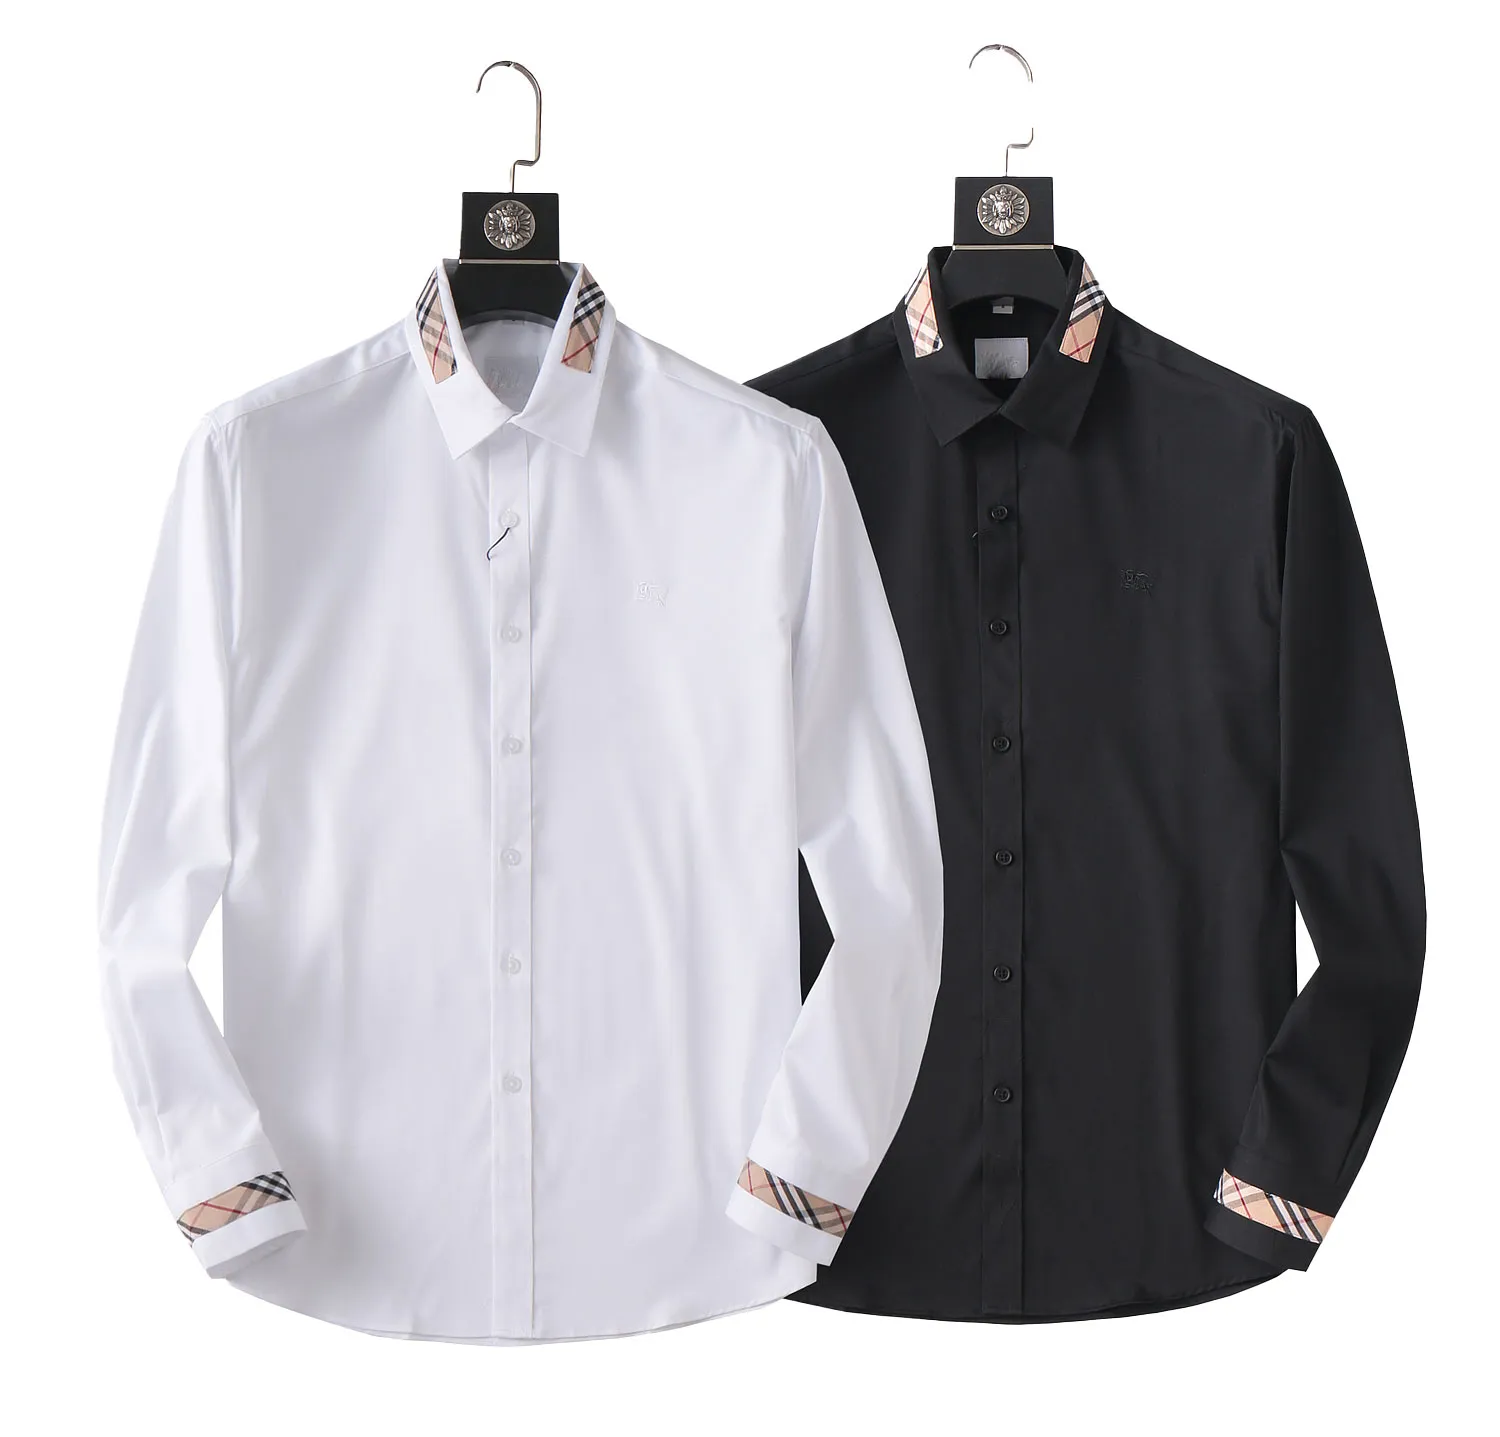 قمصان فرقة تصميم الرجال ، وقمصان ذات الأكمام الطويلة بالأبيض والأسود ، وقمصان بوتيك فاخرة ، وحجم قميص إلى الحجم الفعلي.